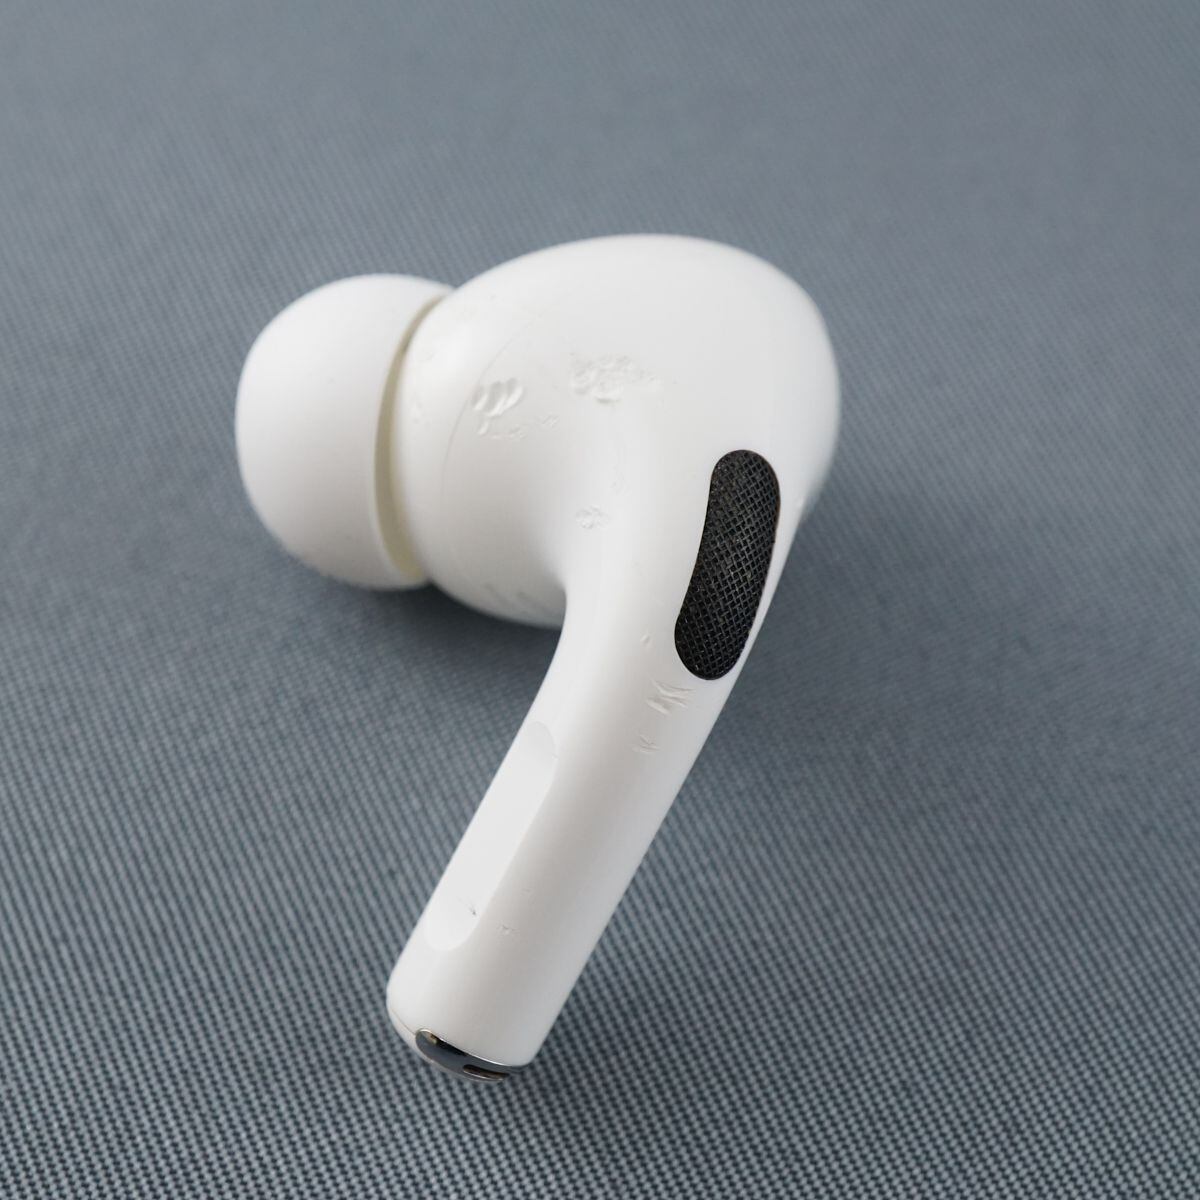 Apple AirPods Pro(第一世代) 左耳イヤホン＋ケース(おまけ)